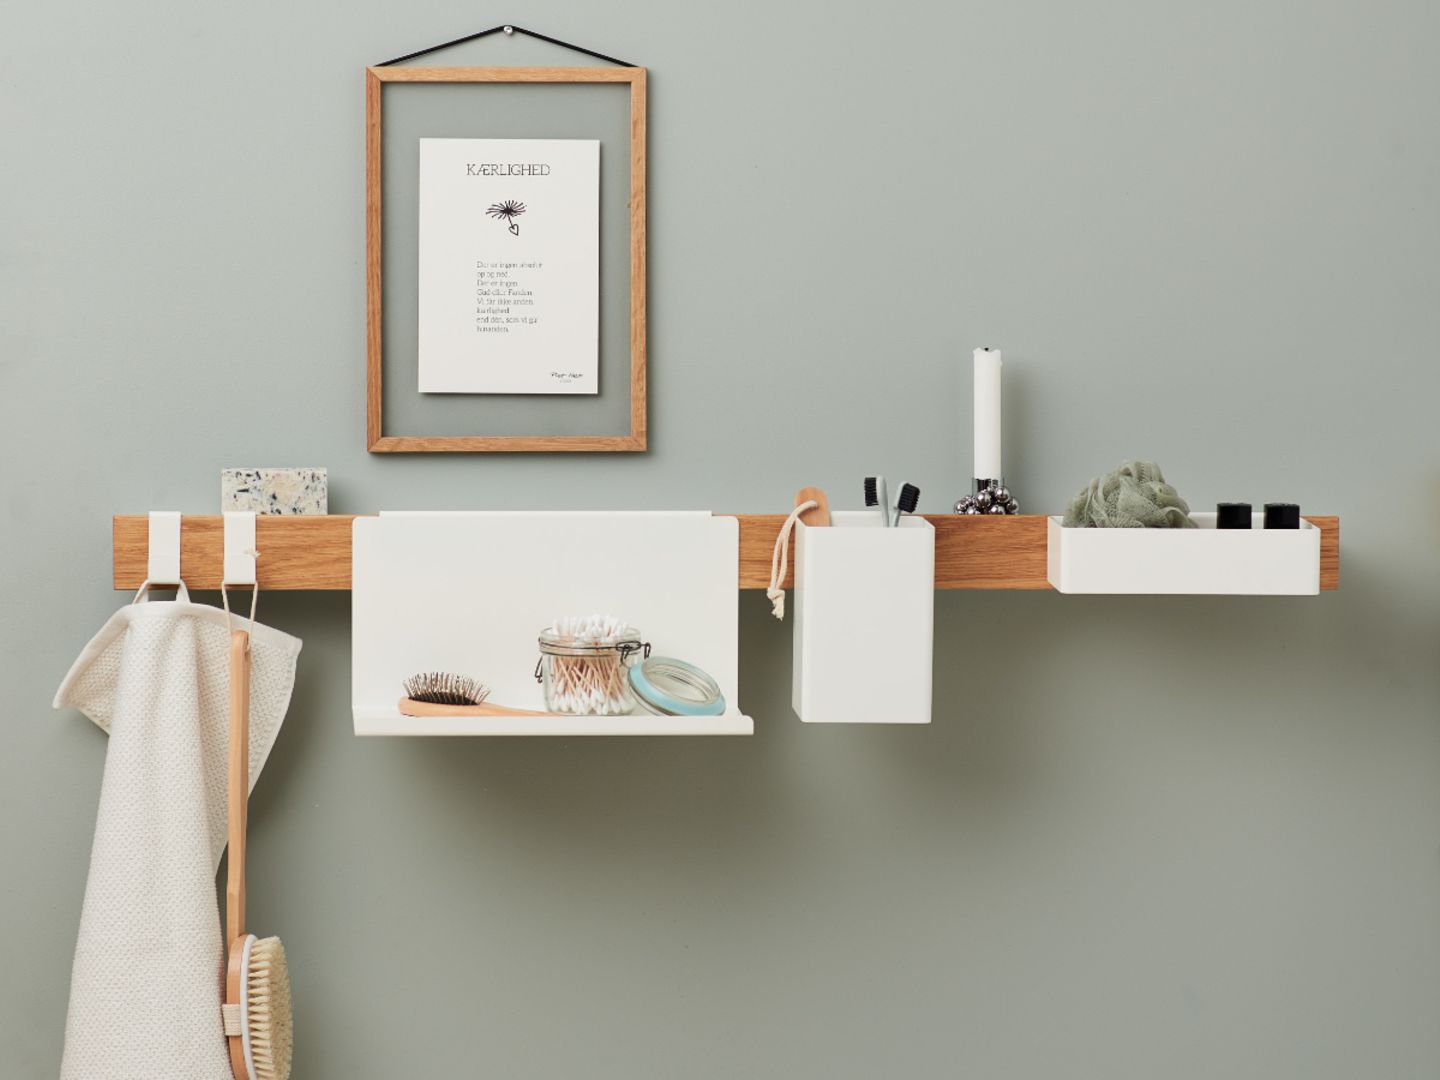 Schmale Ablagefläche aus Holz mit Badezimmer-Accessoires